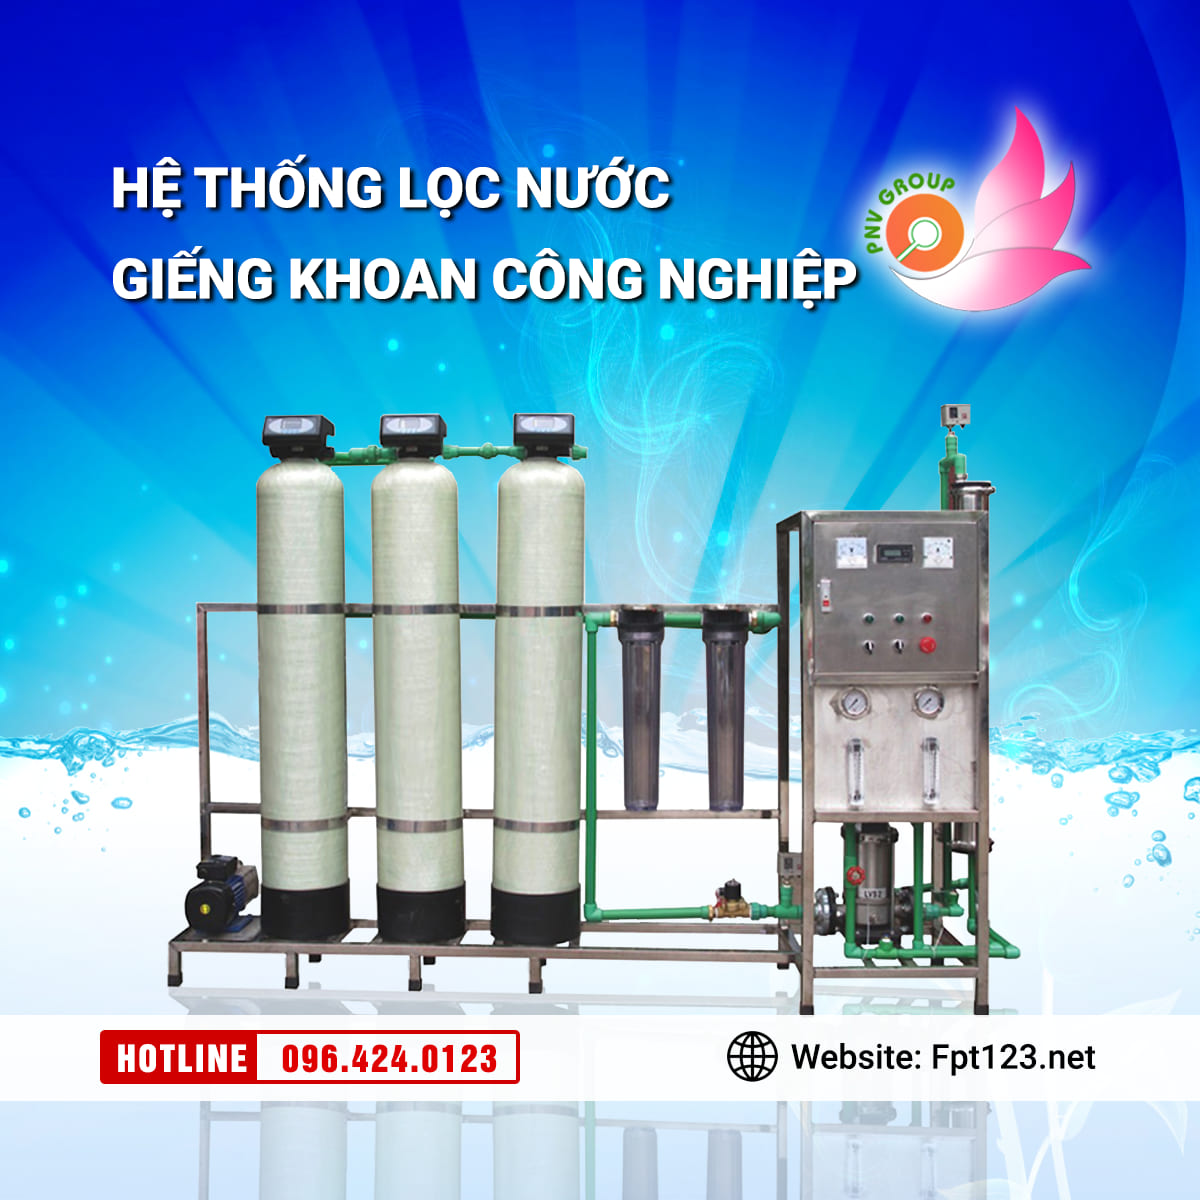 Lắp đặt máy lọc nước giếng khoan tại Hiệp Hòa, Bắc Giang